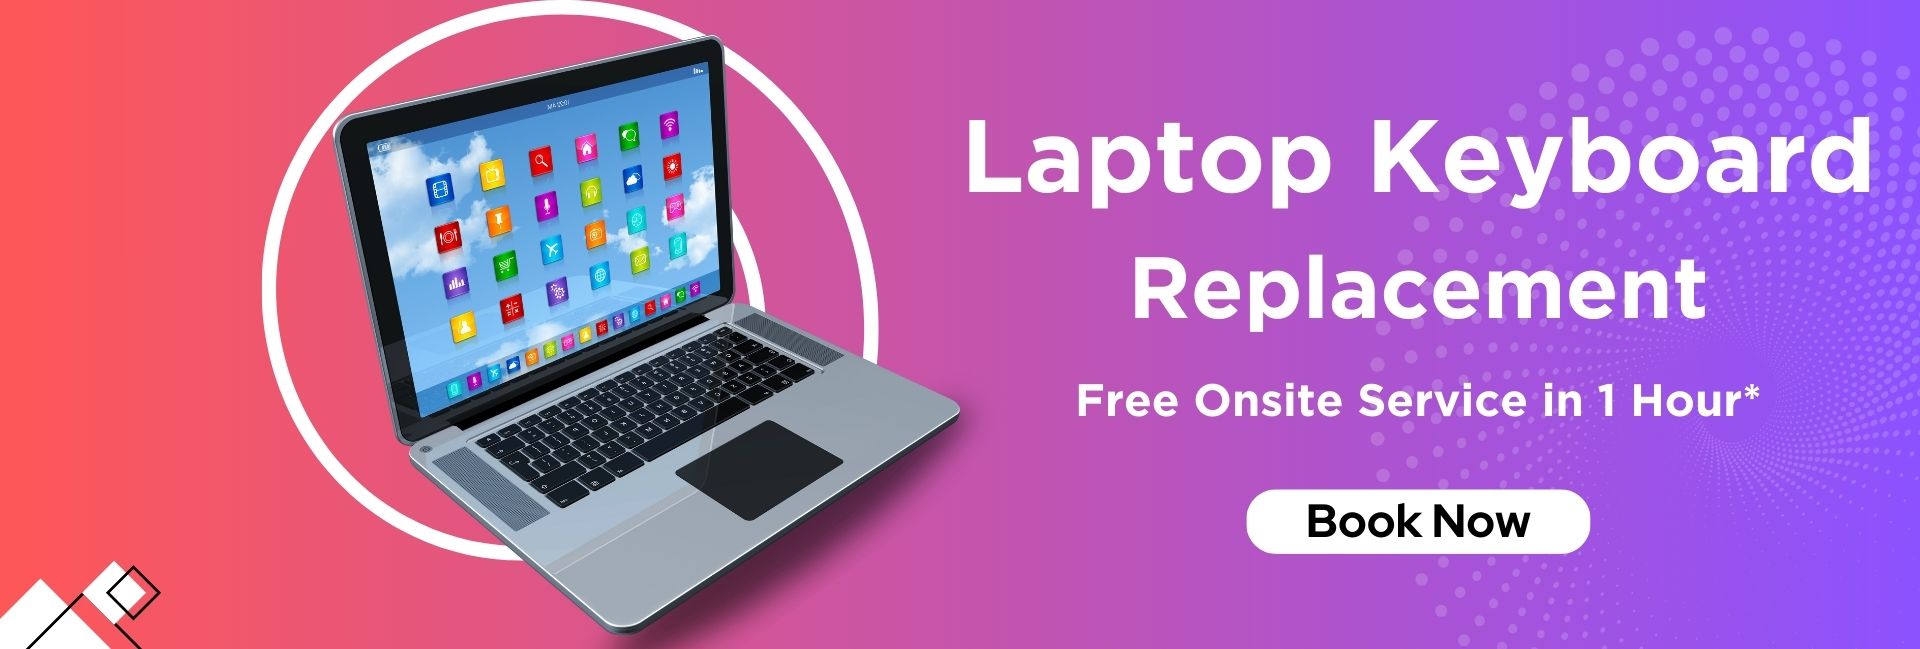 Laptop_Keyboard